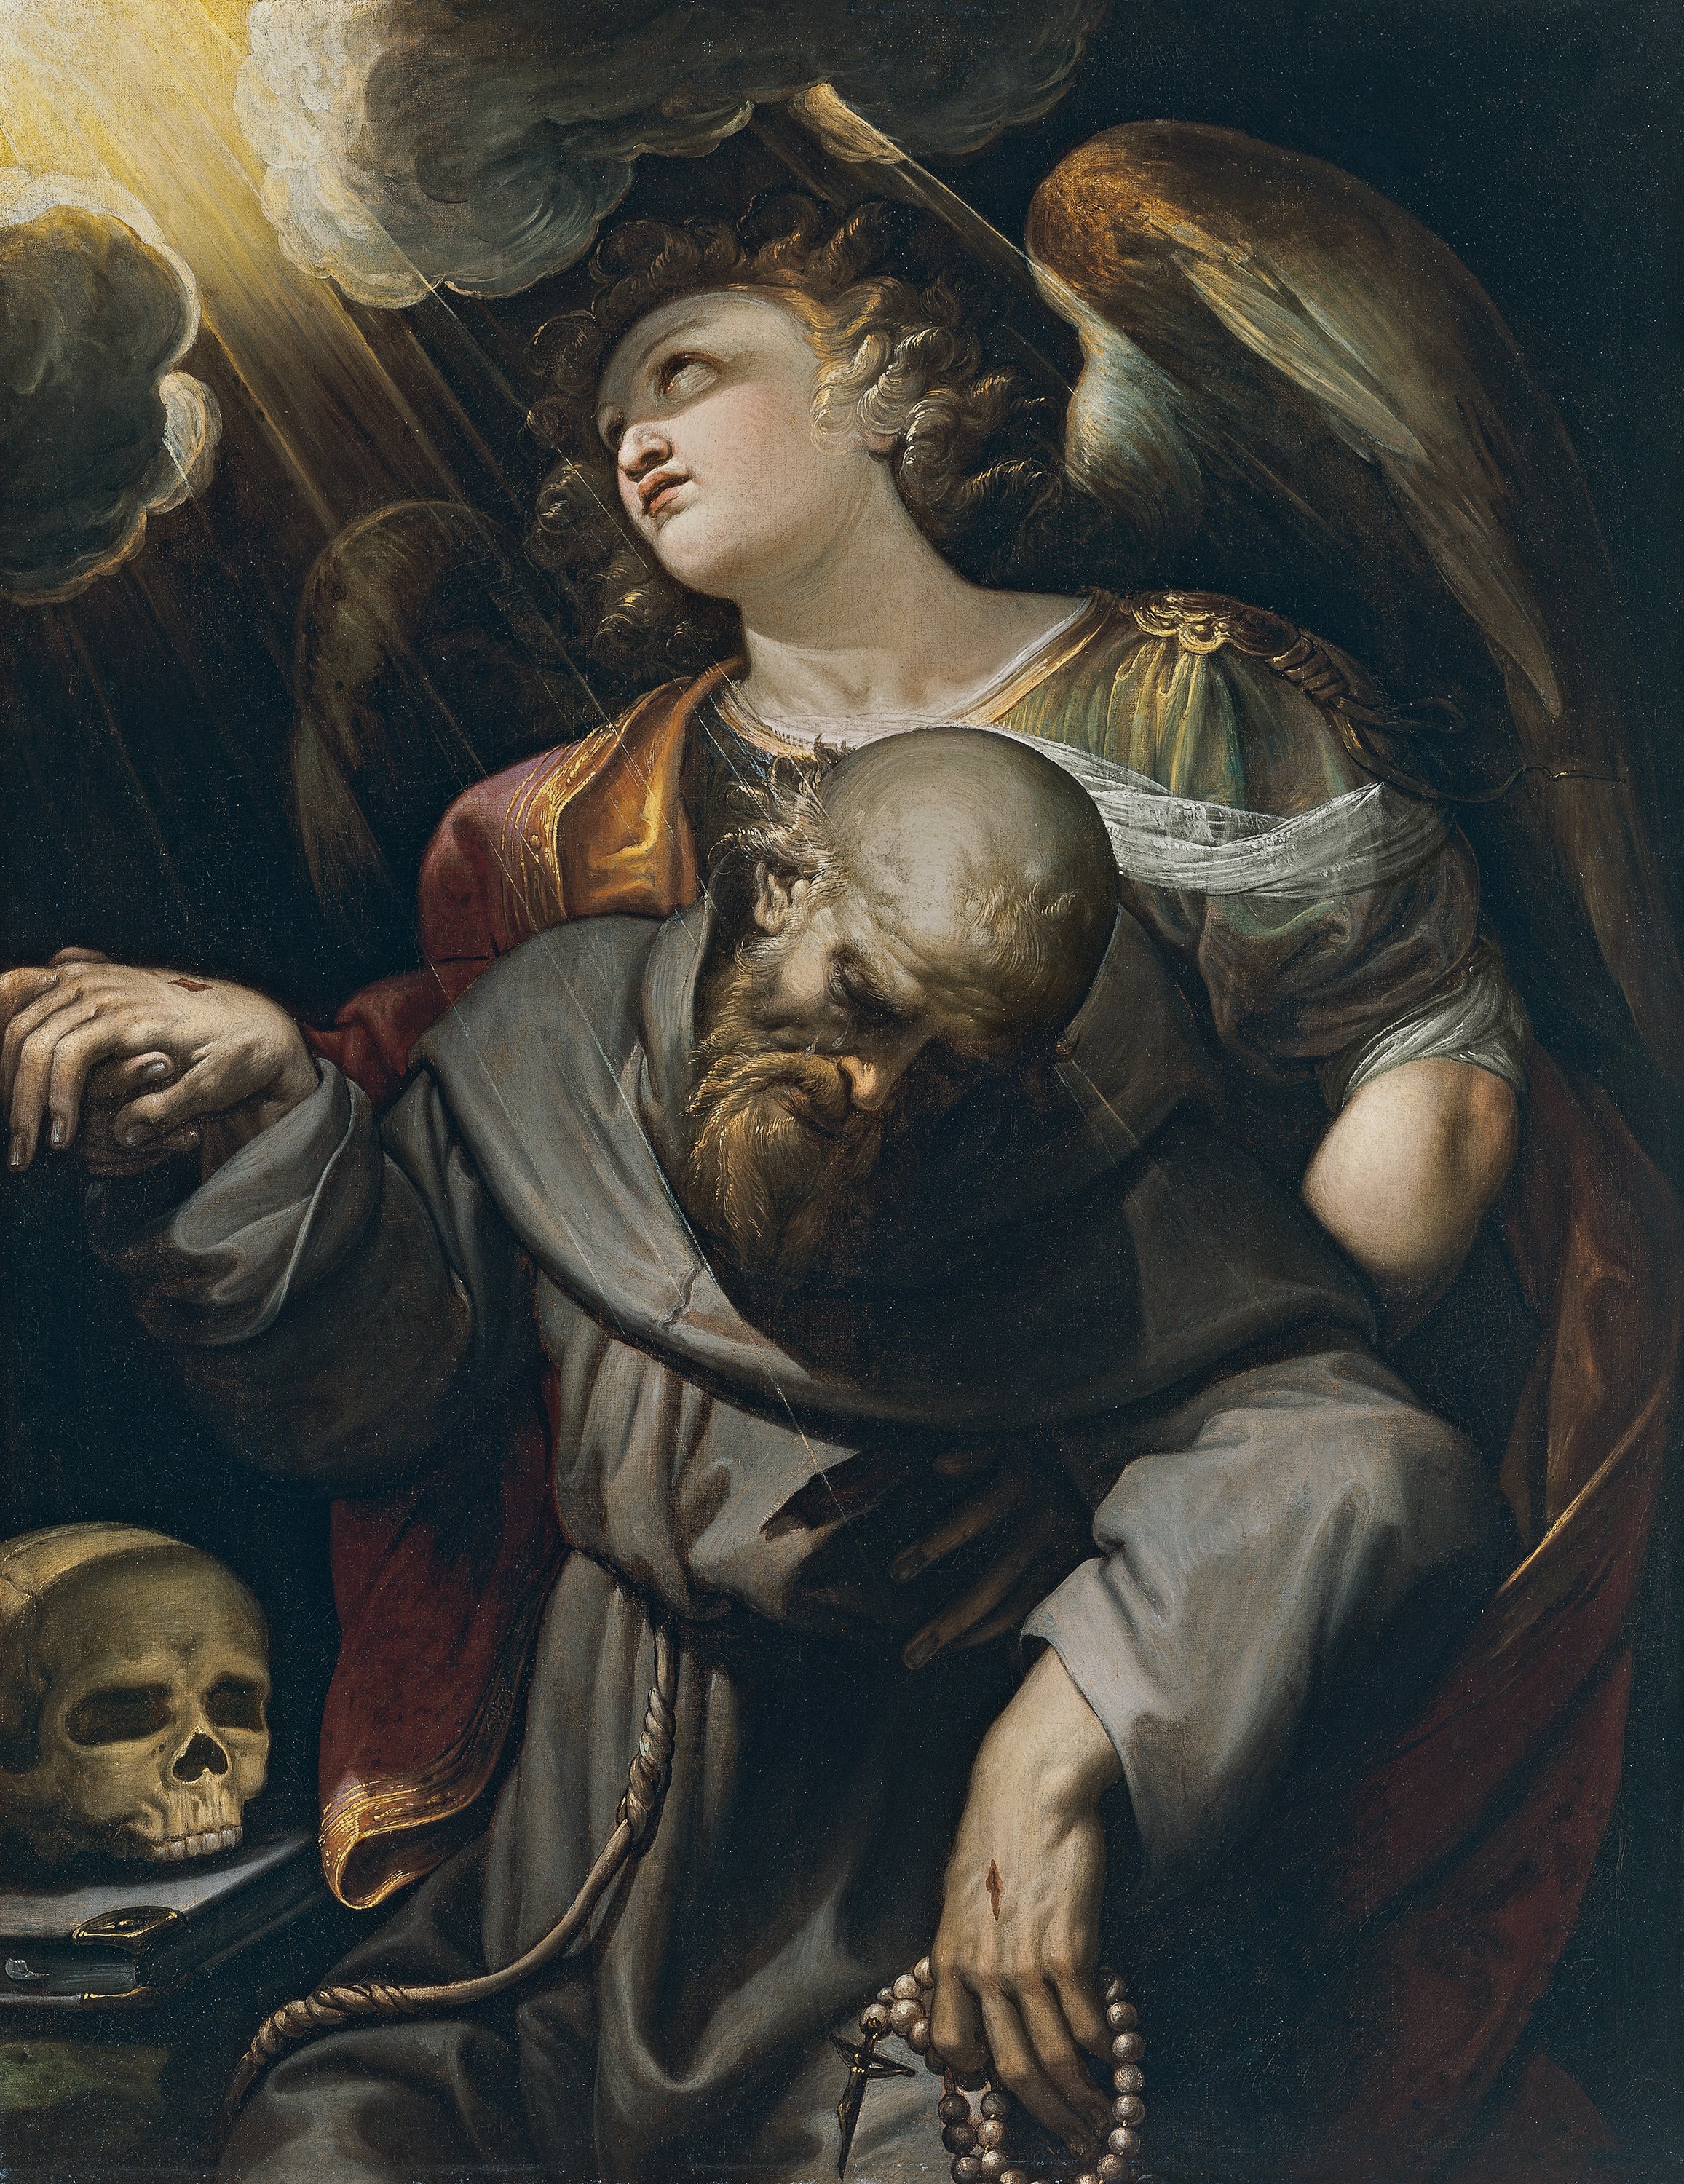 Saint Francis with the Stigmata, held up by an Angel. San Francisco estigmatizado, sostenido por un ángel, c. 1610-1620